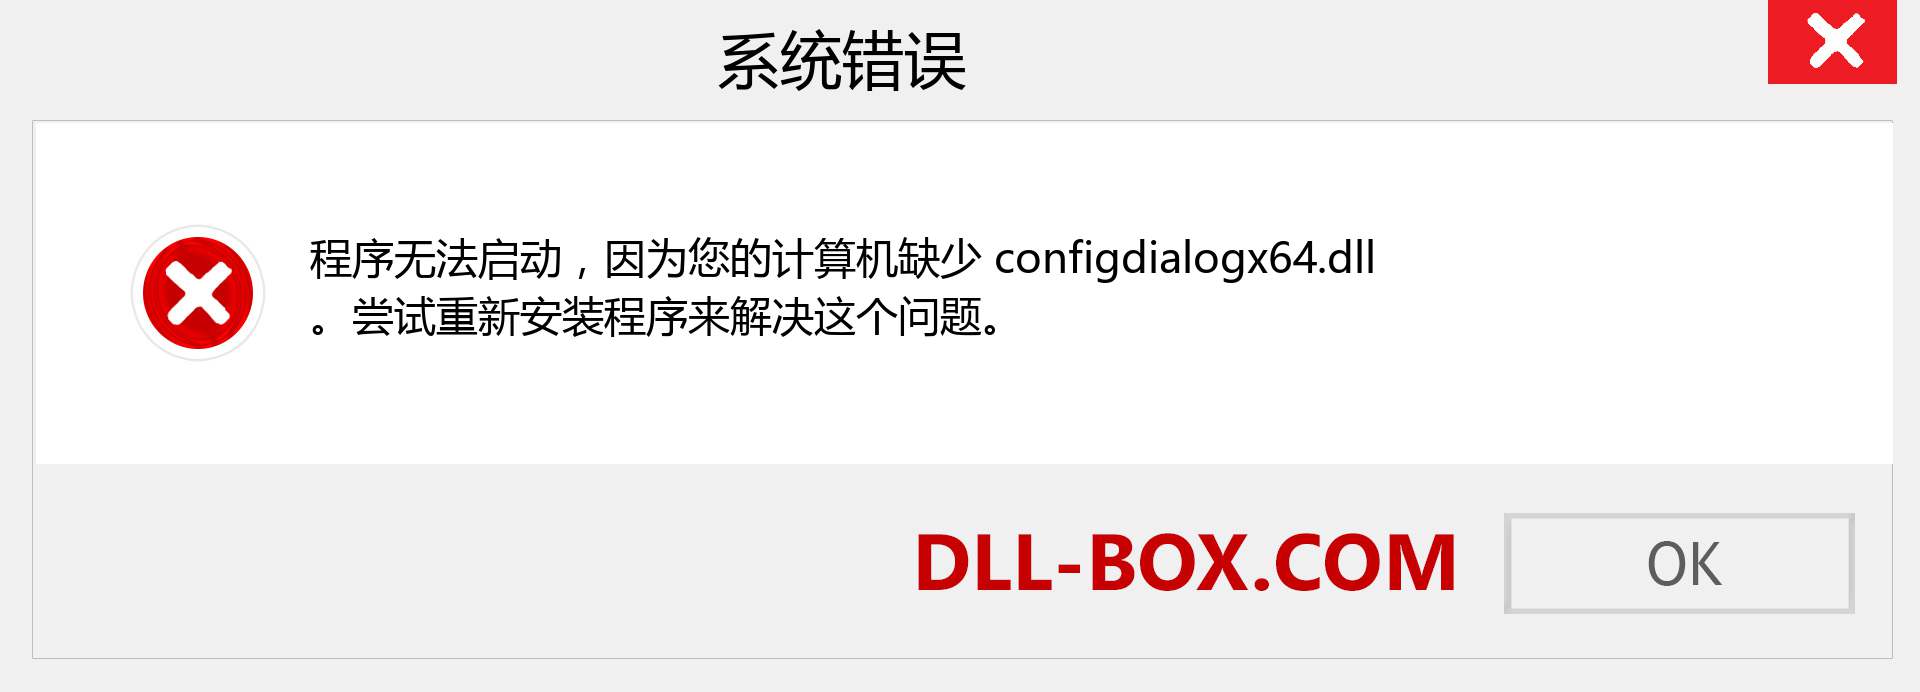 configdialogx64.dll 文件丢失？。 适用于 Windows 7、8、10 的下载 - 修复 Windows、照片、图像上的 configdialogx64 dll 丢失错误